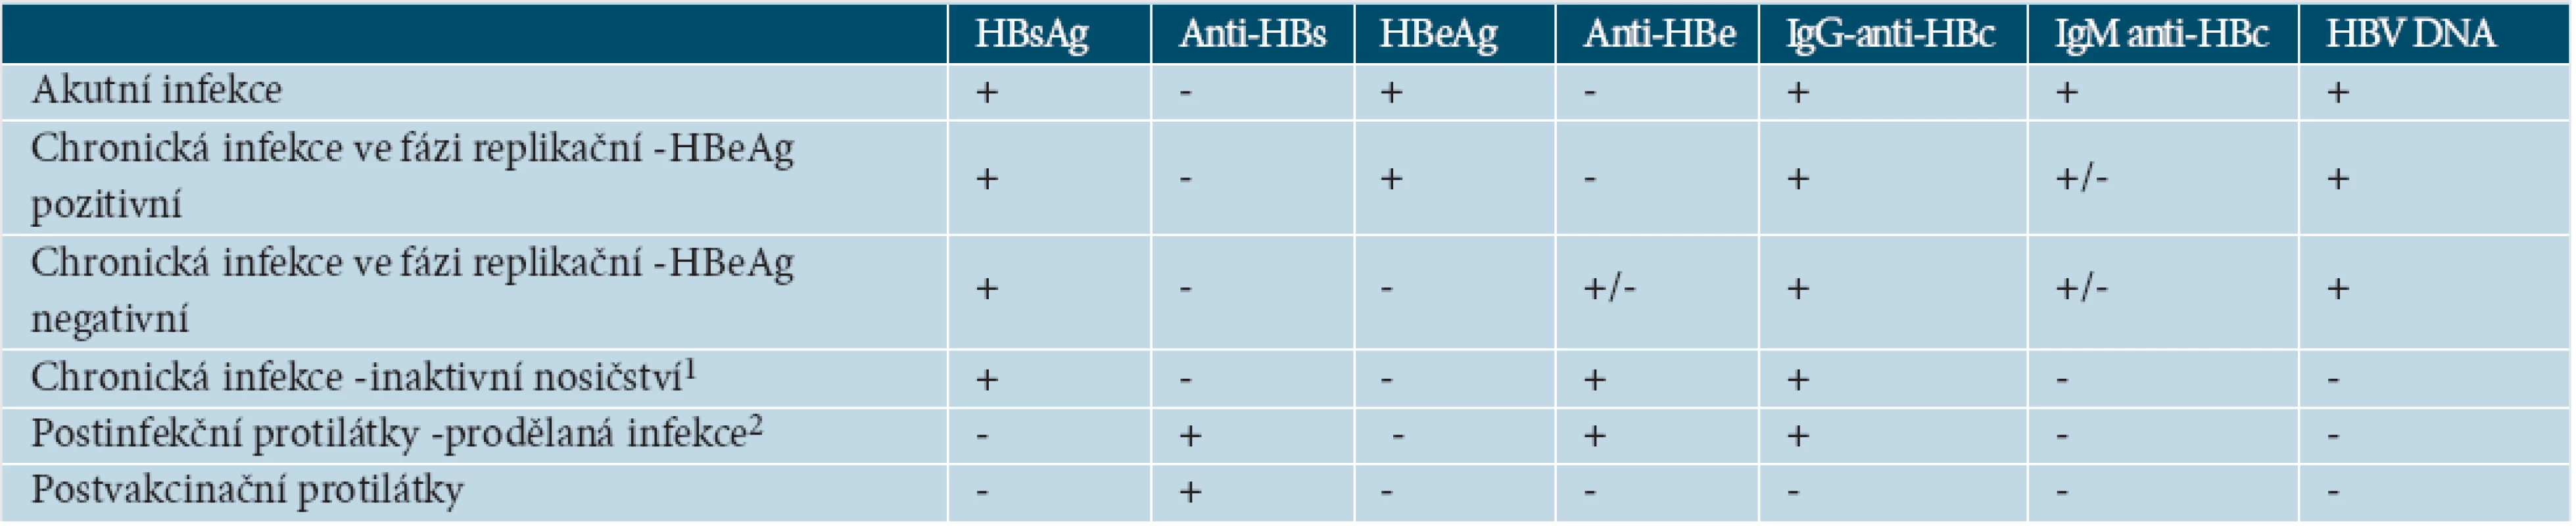 Typické nálezy jednotlivých stadií vývoje infekce HBV (upraveno podle [44])